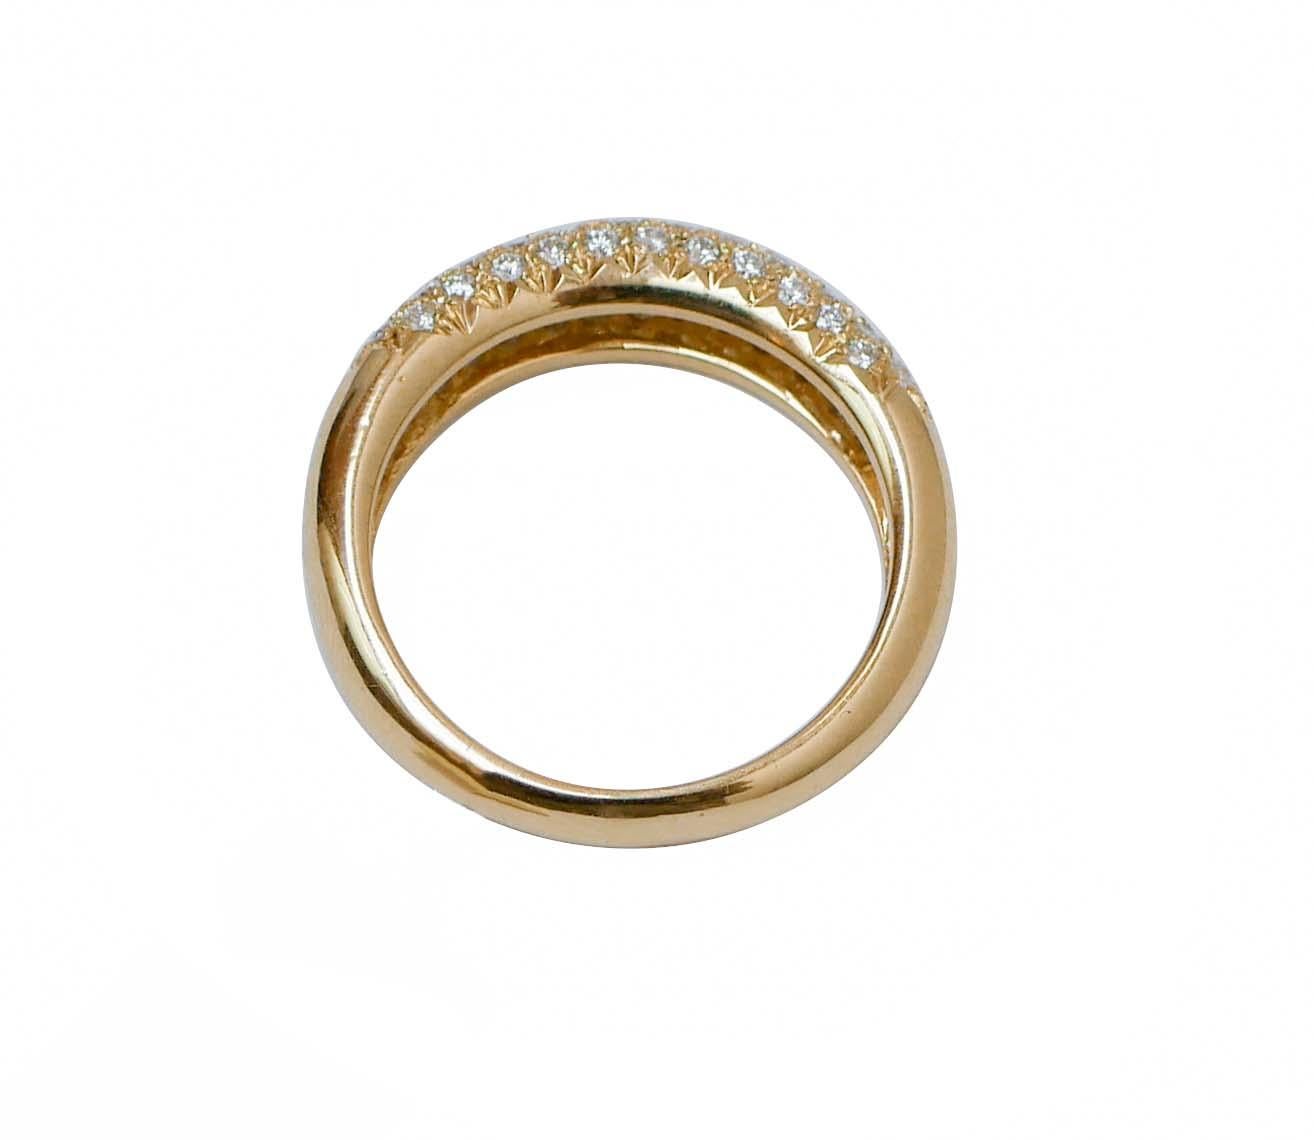 Modern Diamonds, 18 Karat Yellow Gold Ring.